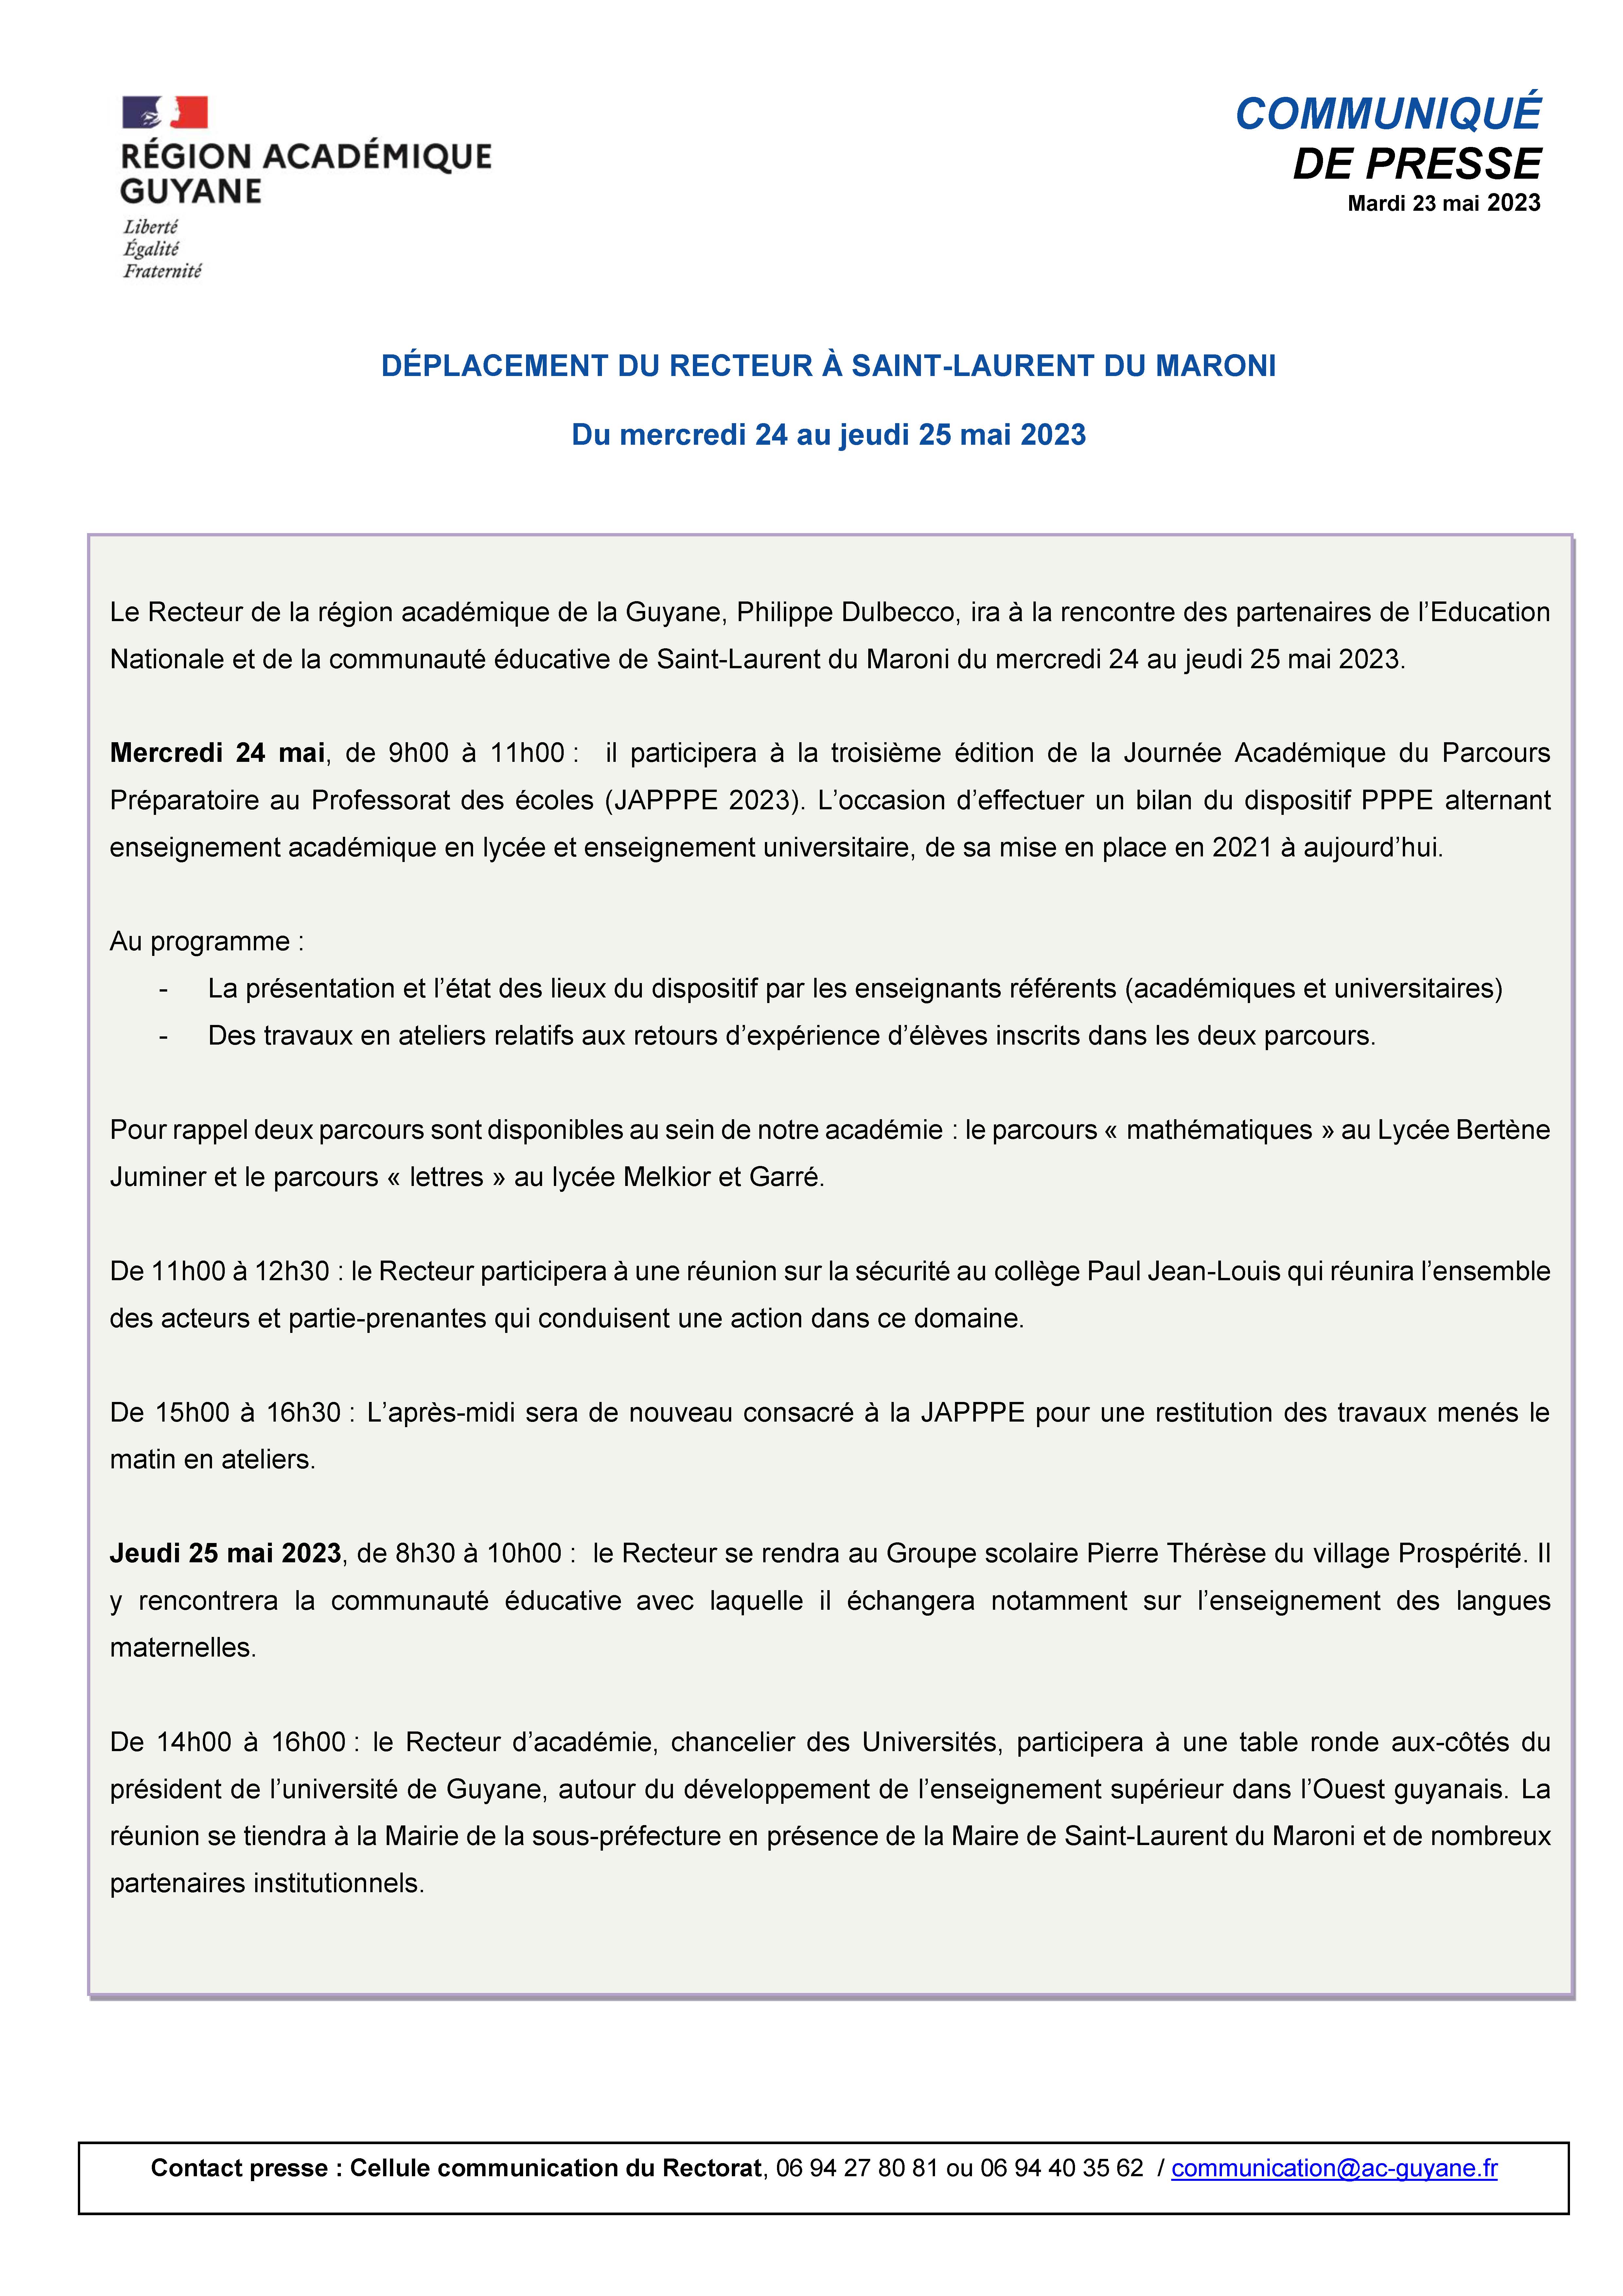 [CP]Déplacement du Recteur à Saint-Laurent du Maroni - du 24 au 25 mai 2023